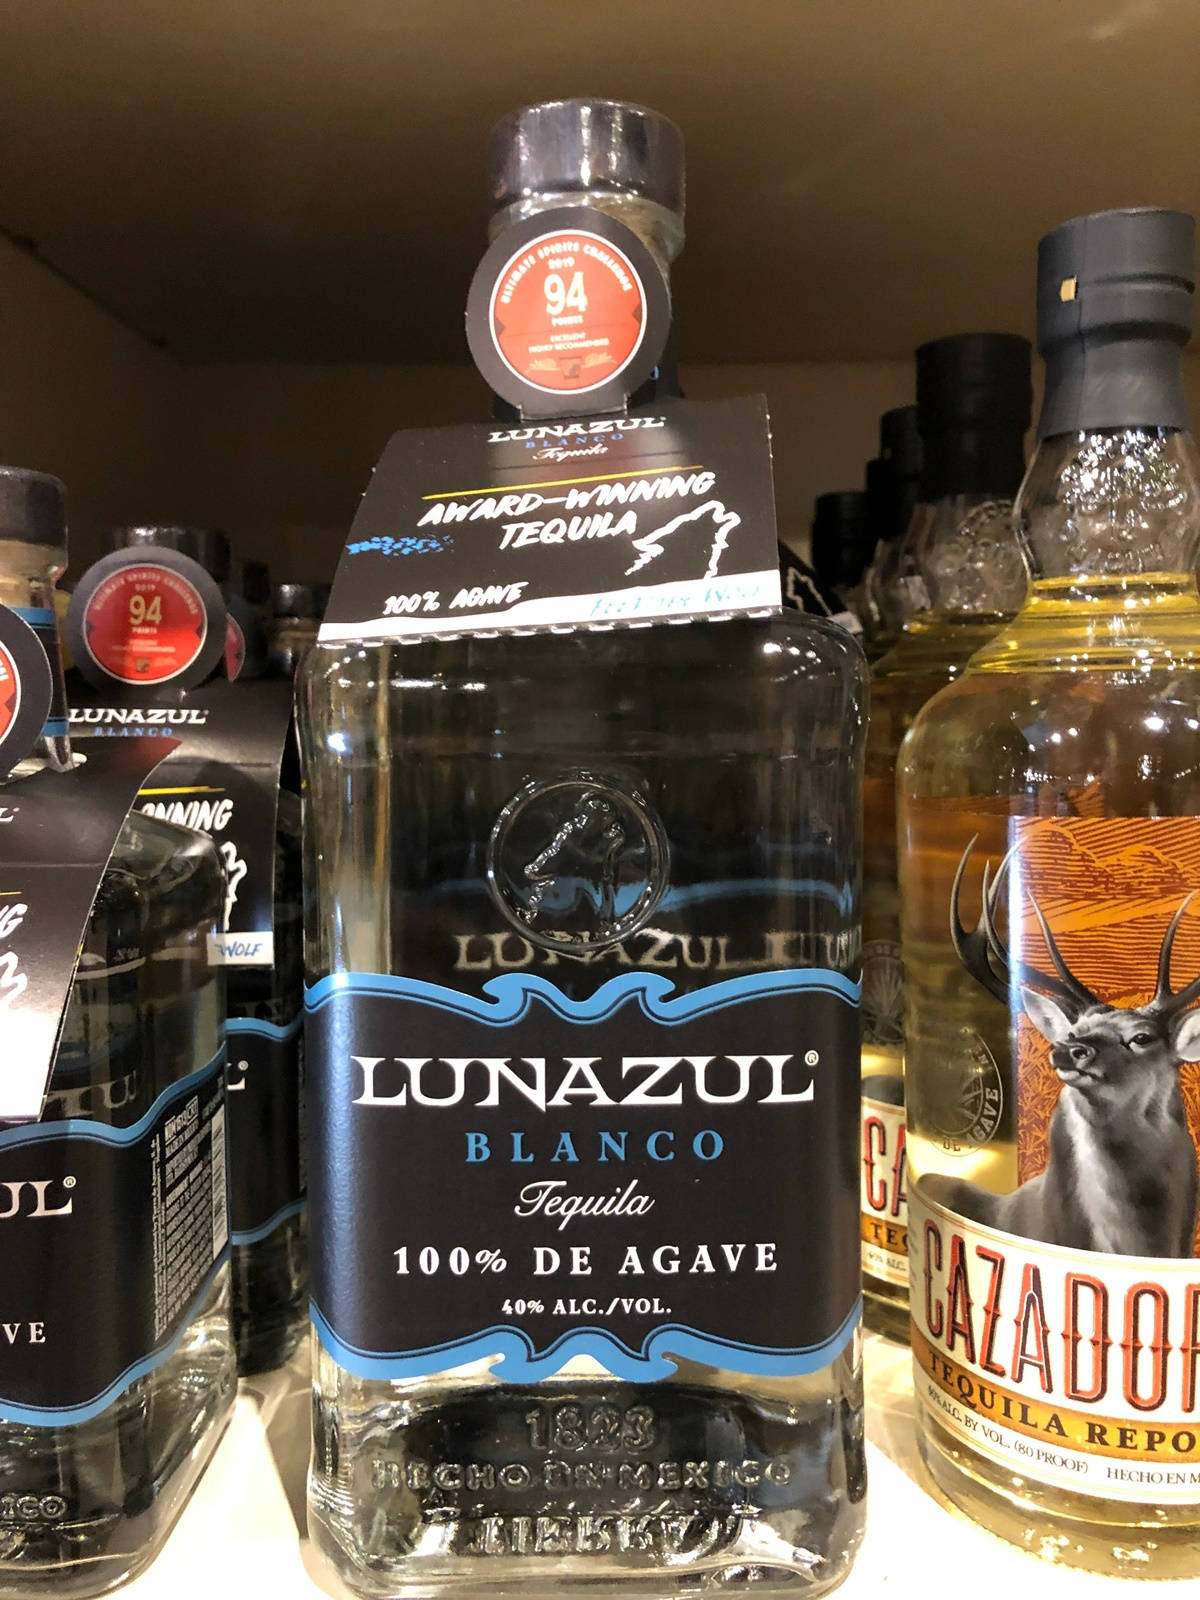 Lunazulblanco Tequila Ganador De Premios. Fondo de pantalla